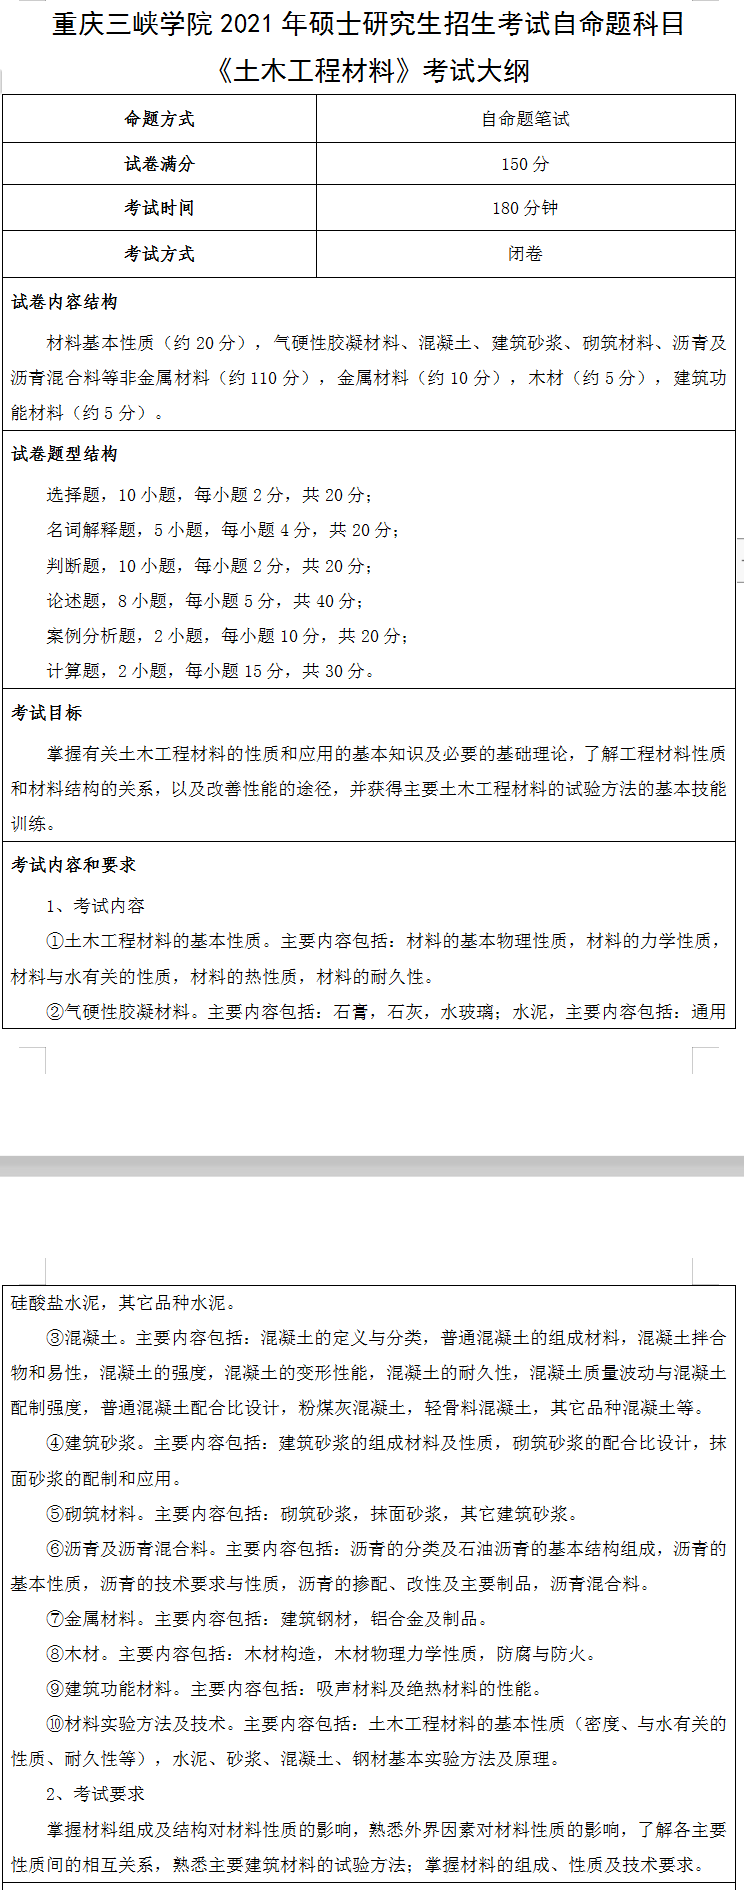 重庆三峡学院土木工程材料2021考研自命题科目考试大纲